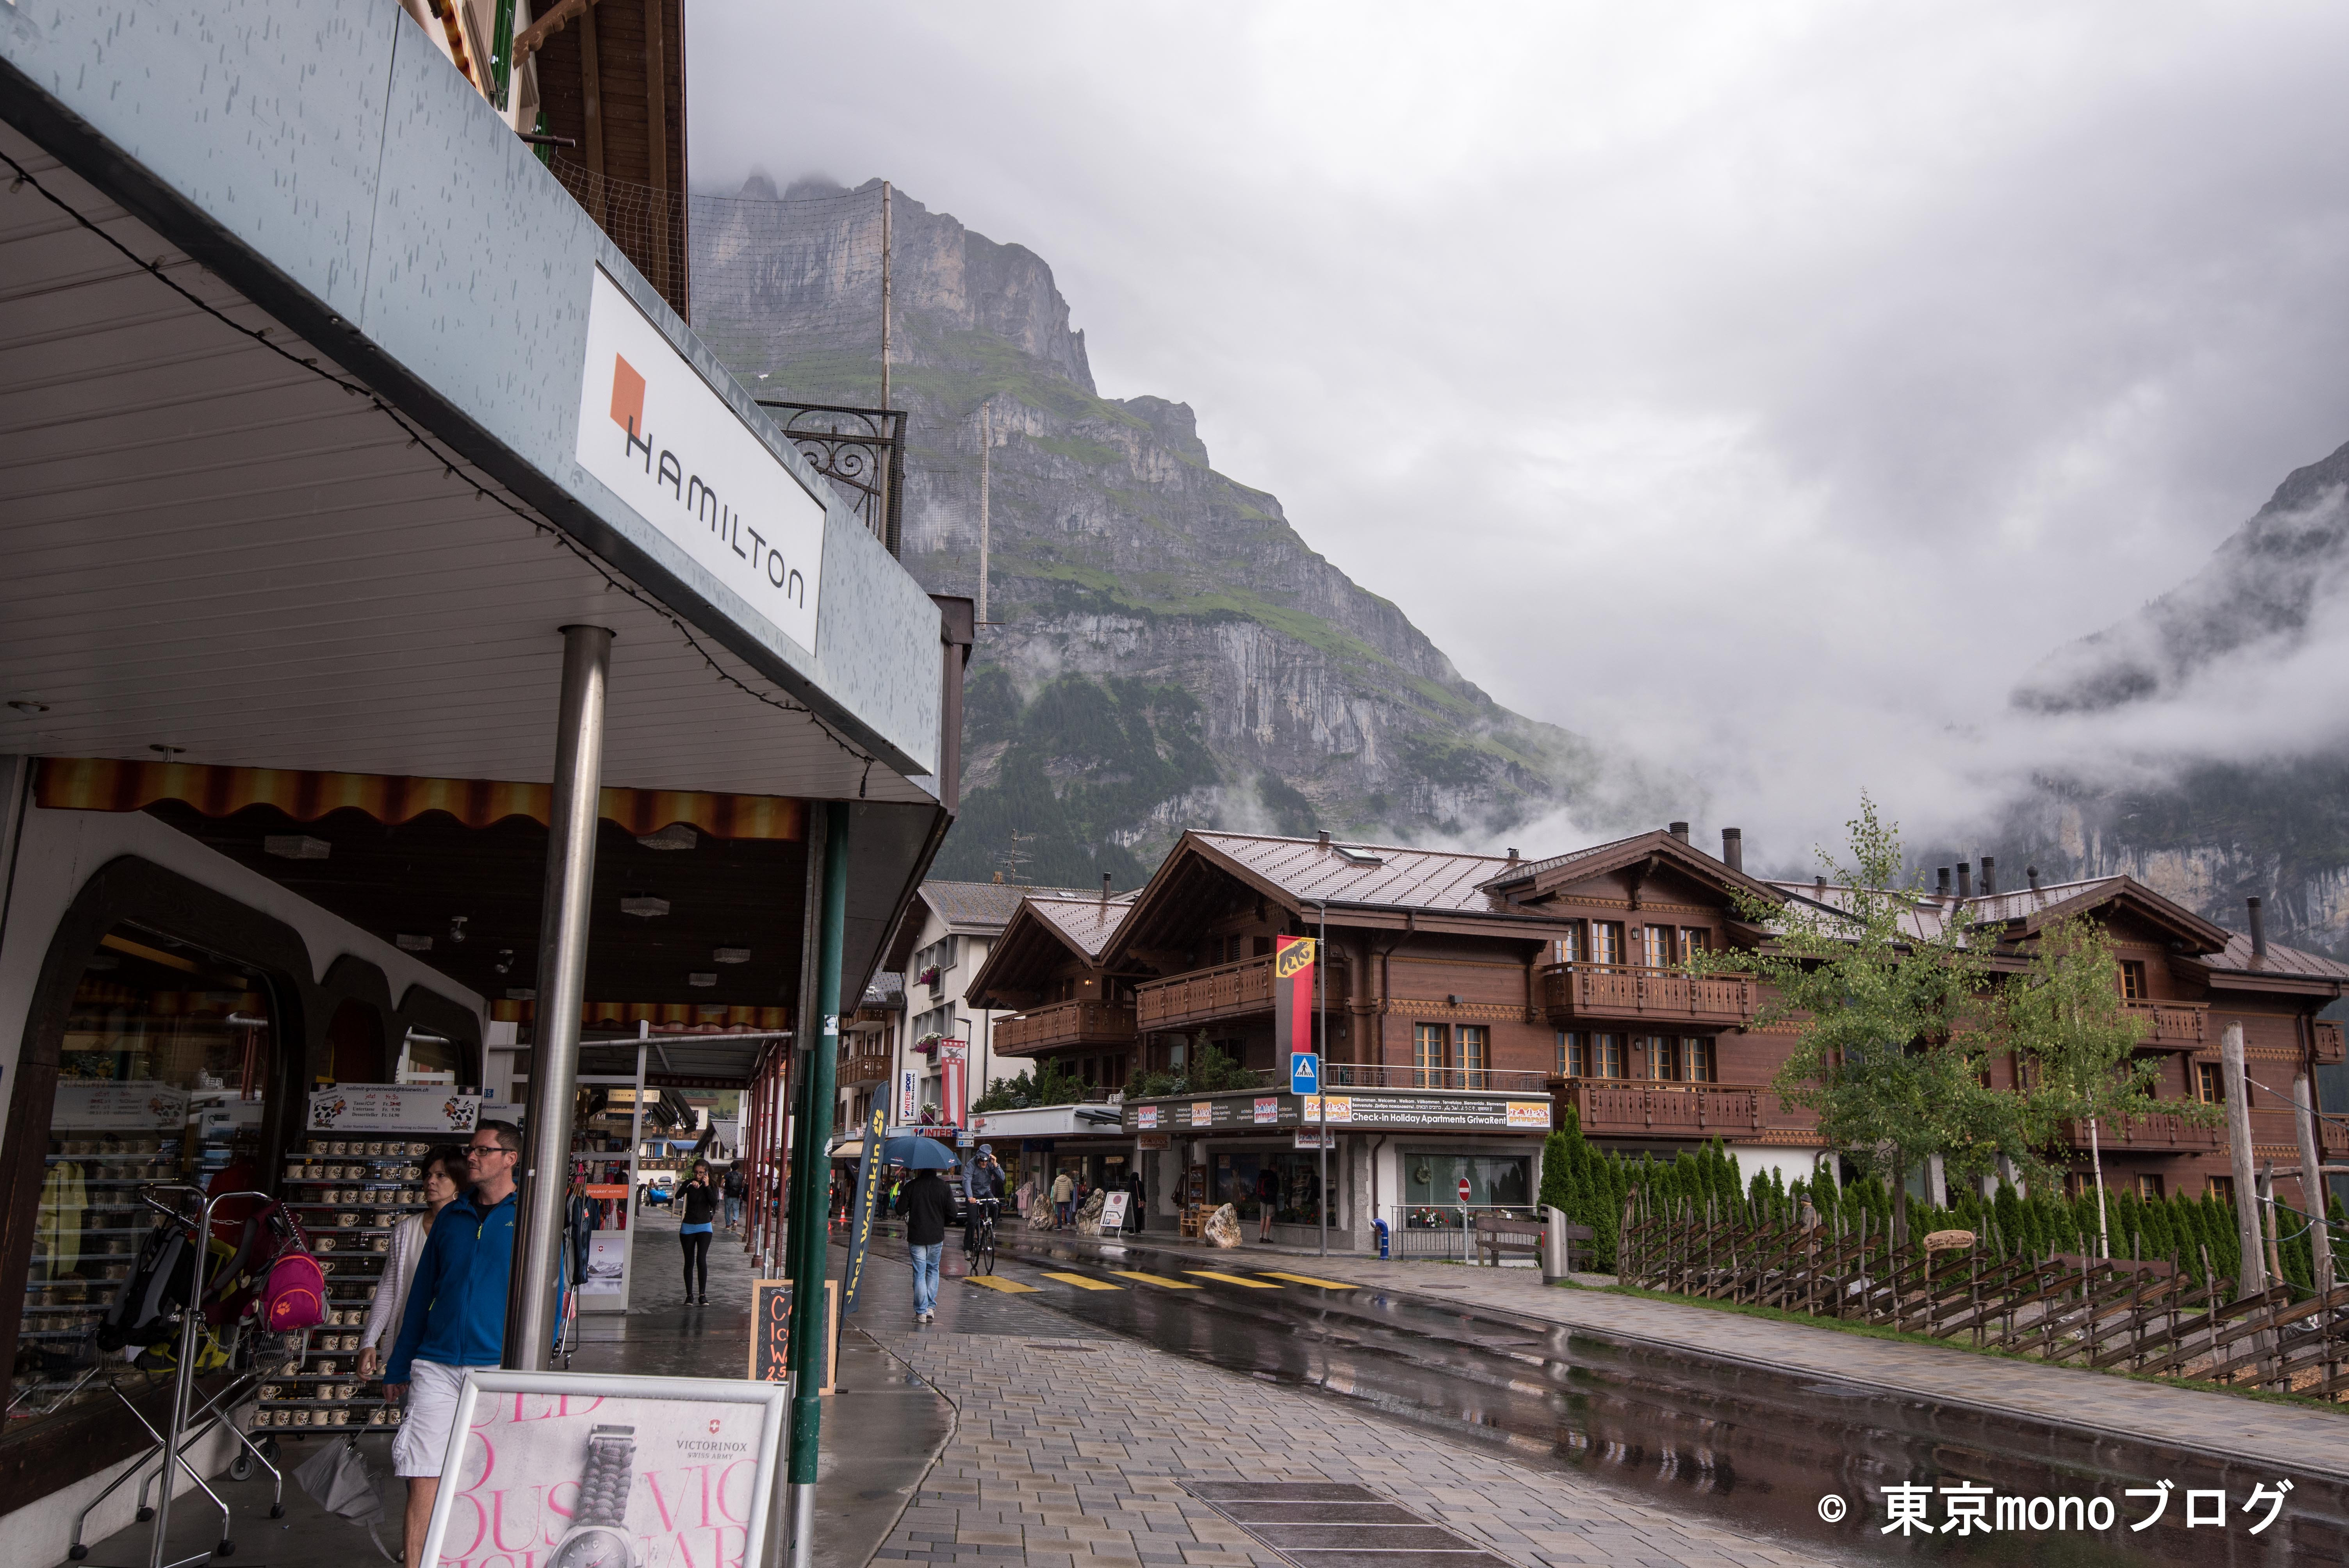 スイス観光記 グリンデルワルトの街並み紹介 周辺観光地やハイキング お土産情報も紹介します Hisツアー６日目 東京monoブログ